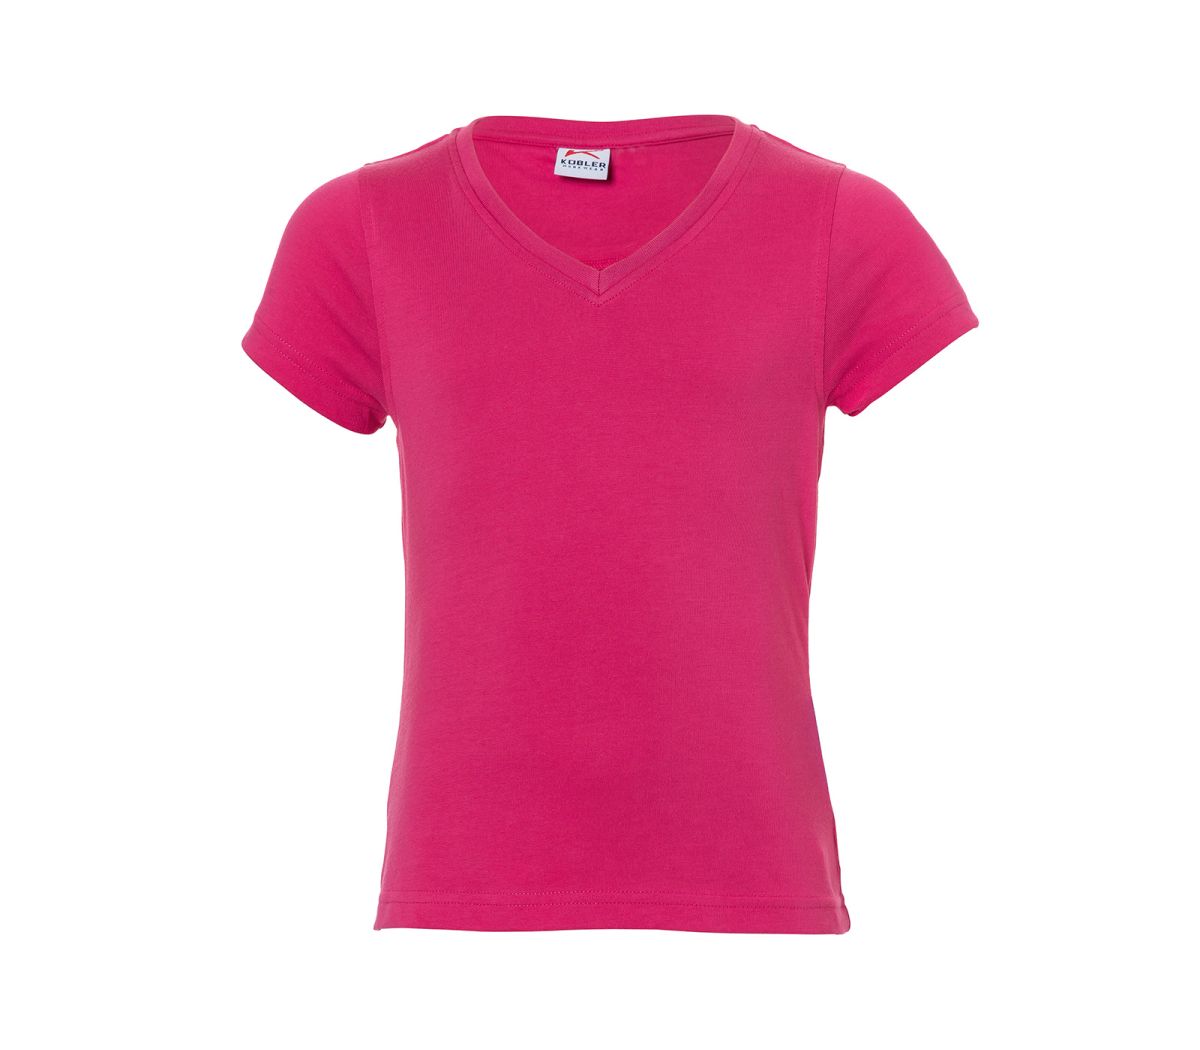 KÜBLER KIDZ T-Shirt Mädchen in Pink, Größe 98-104